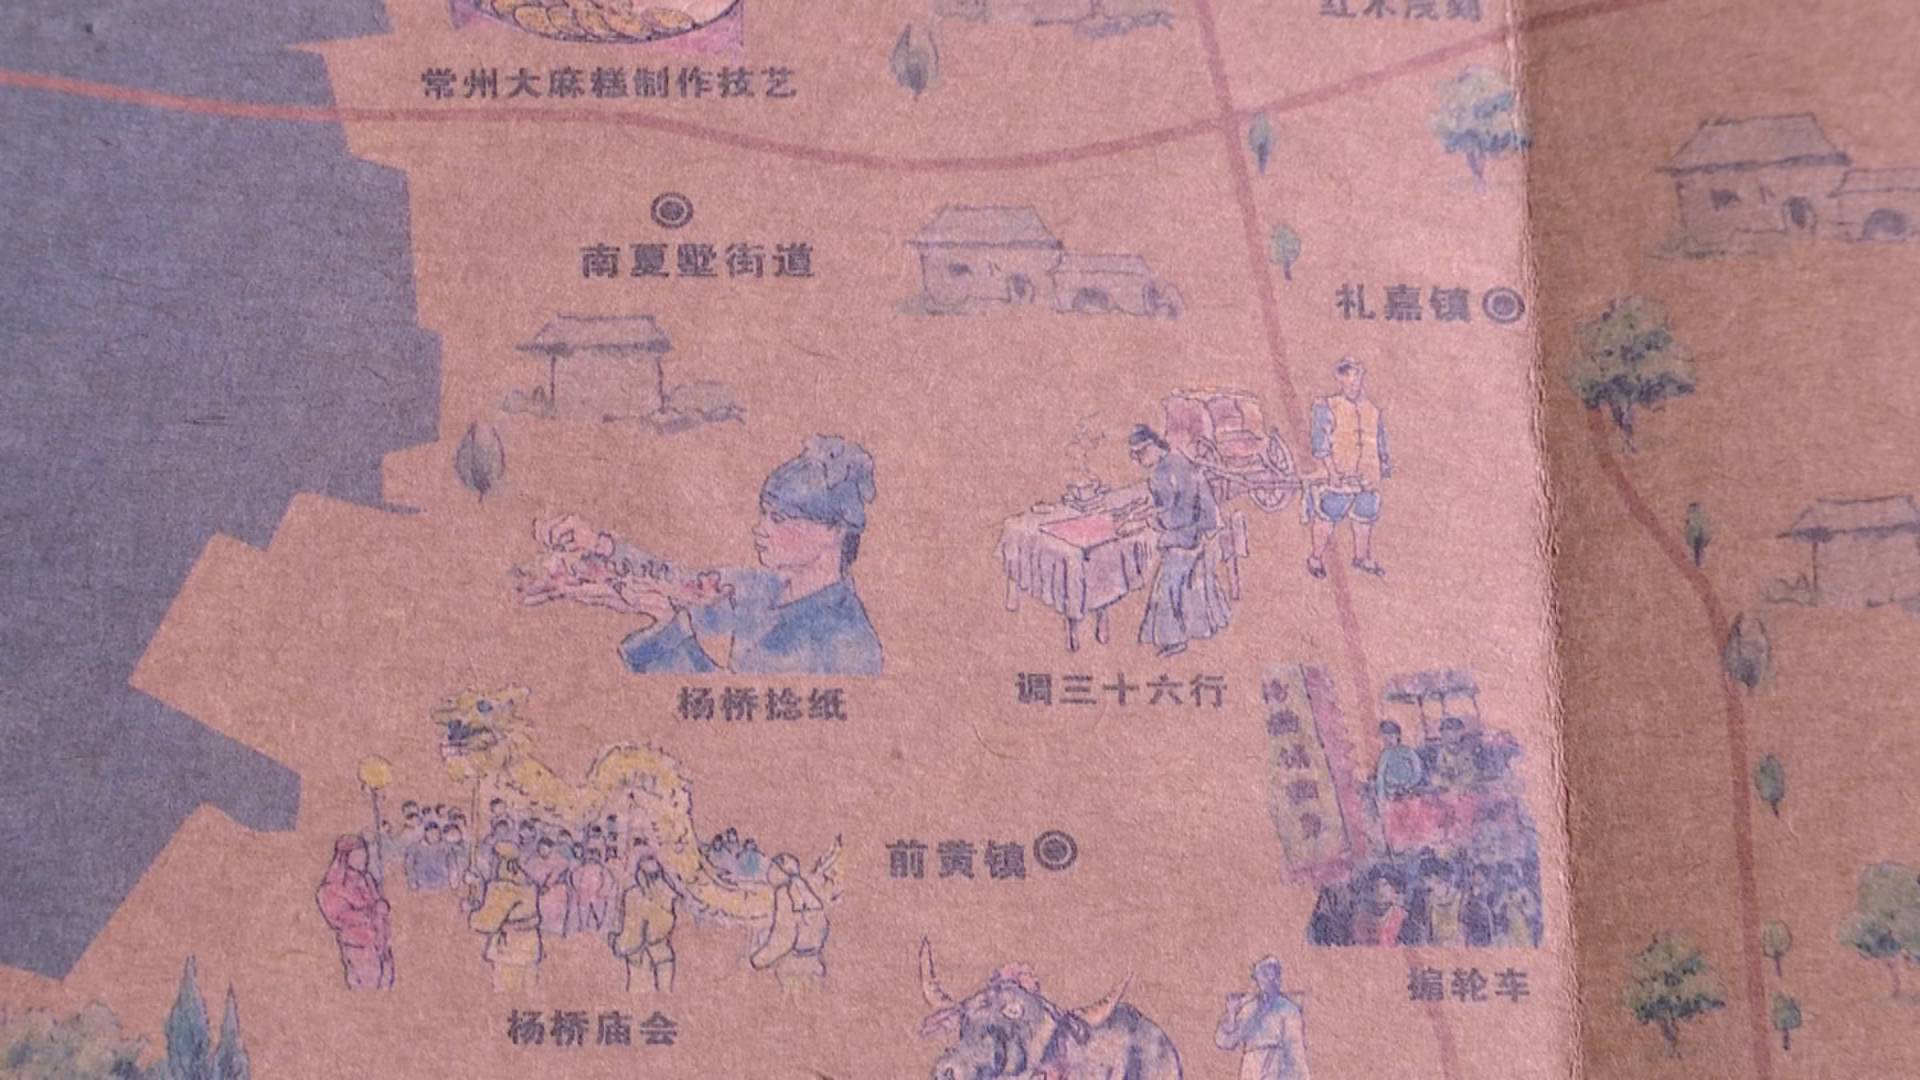 常州武进:手绘非遗地图出炉 传统文化也能"按图索骥"